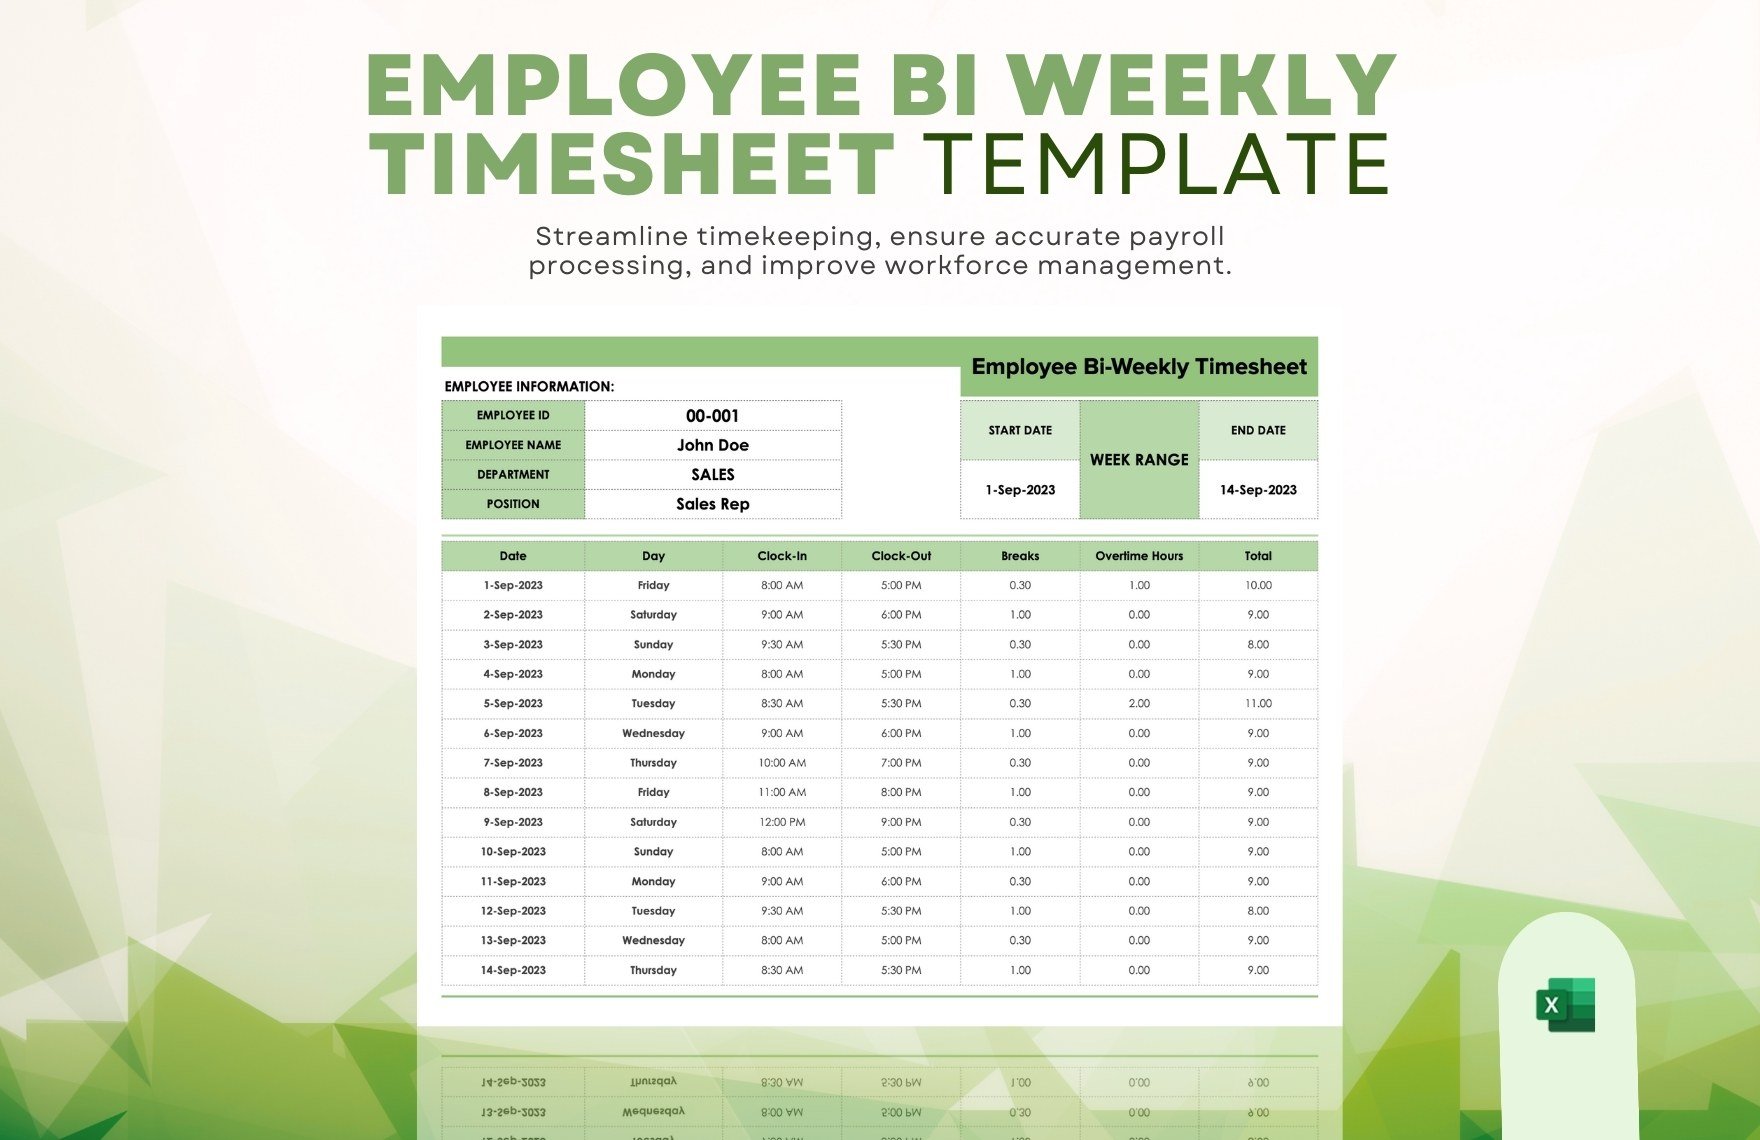 Employee Bi weekly Timesheet Template in Excel